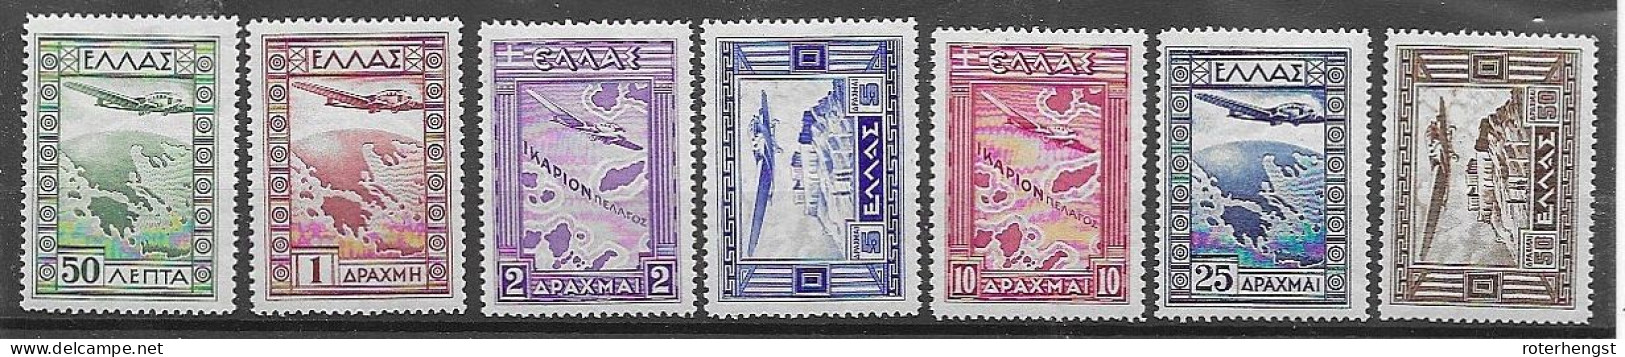 Greece 1933 Mh * (300 Euros) Complete Airmail Set - Ongebruikt